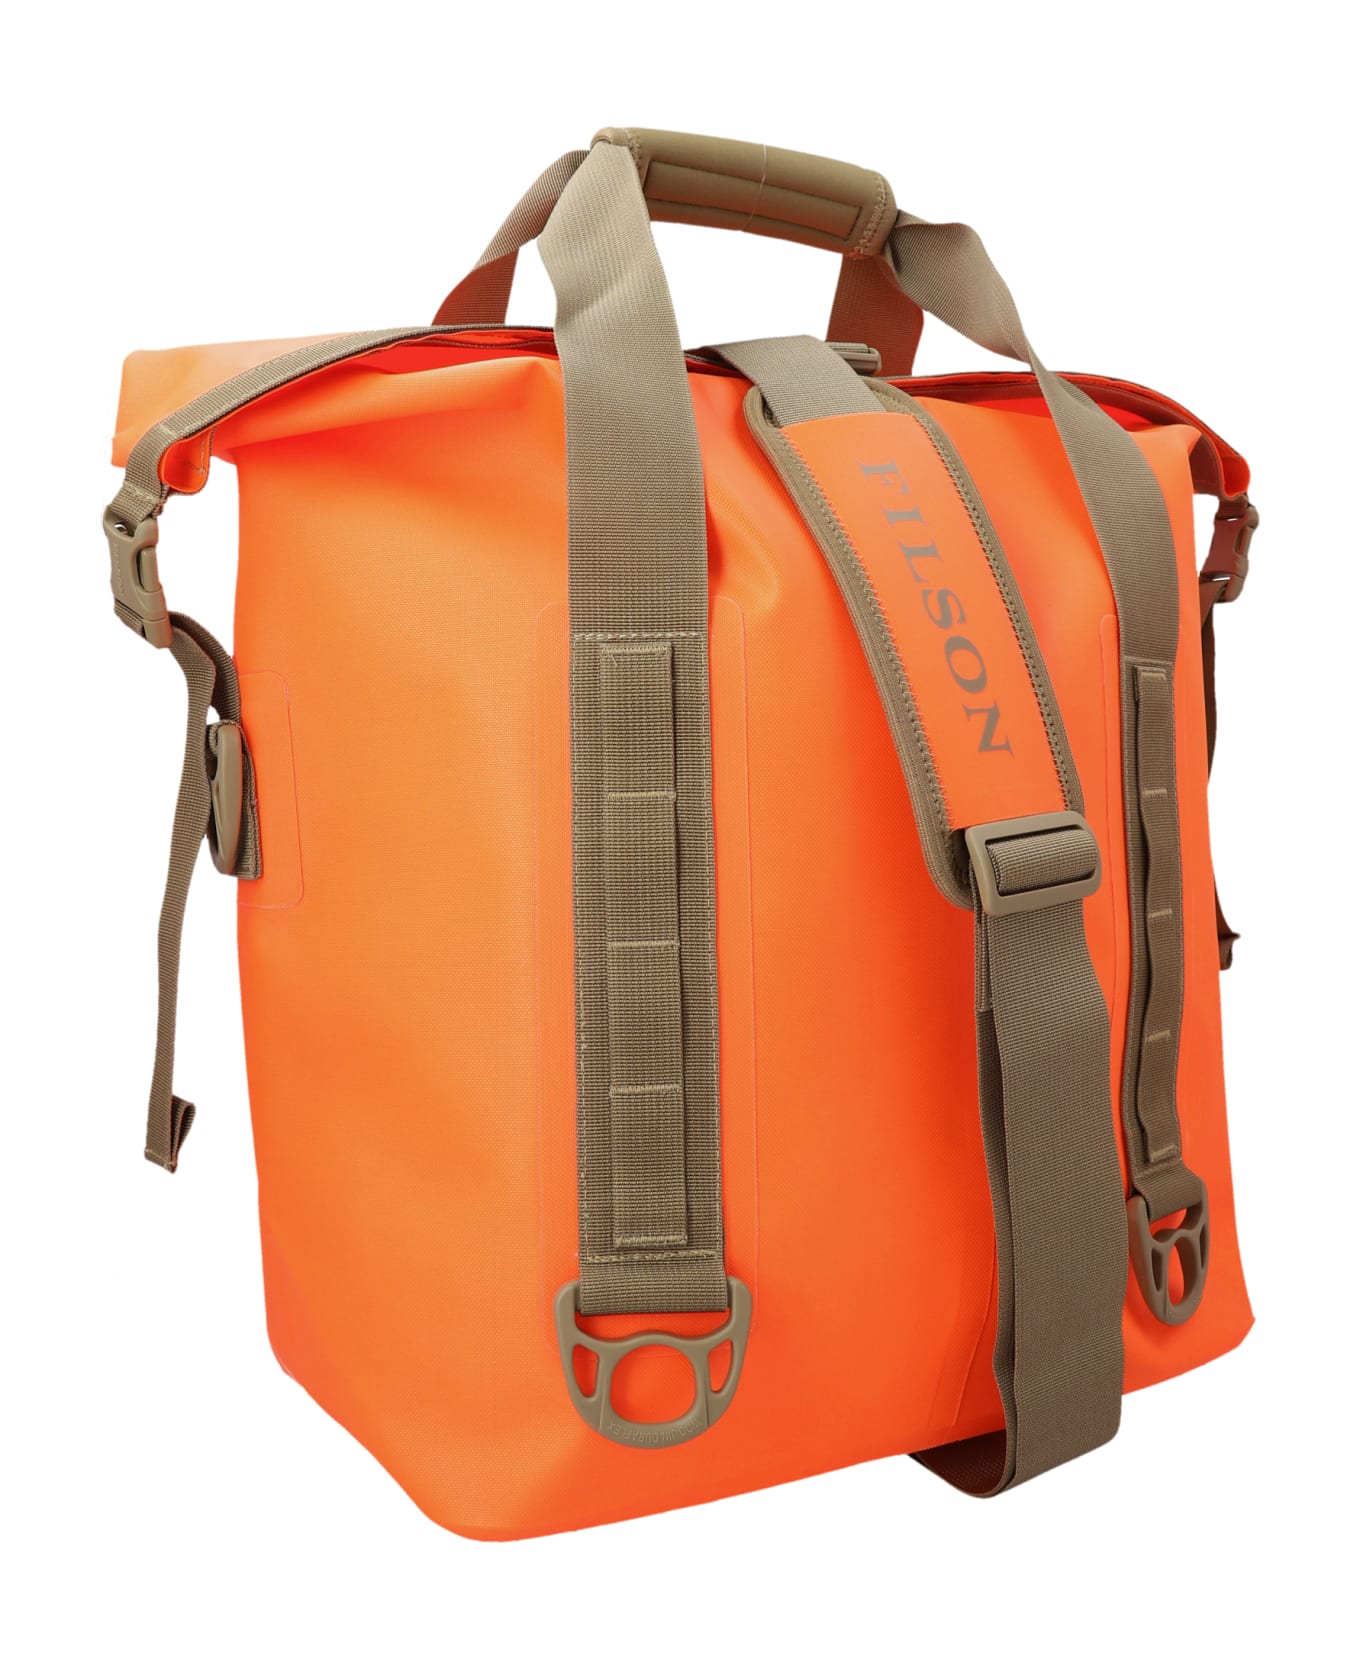 Filson 'dry Roll-top' Shopping Bag - Orange